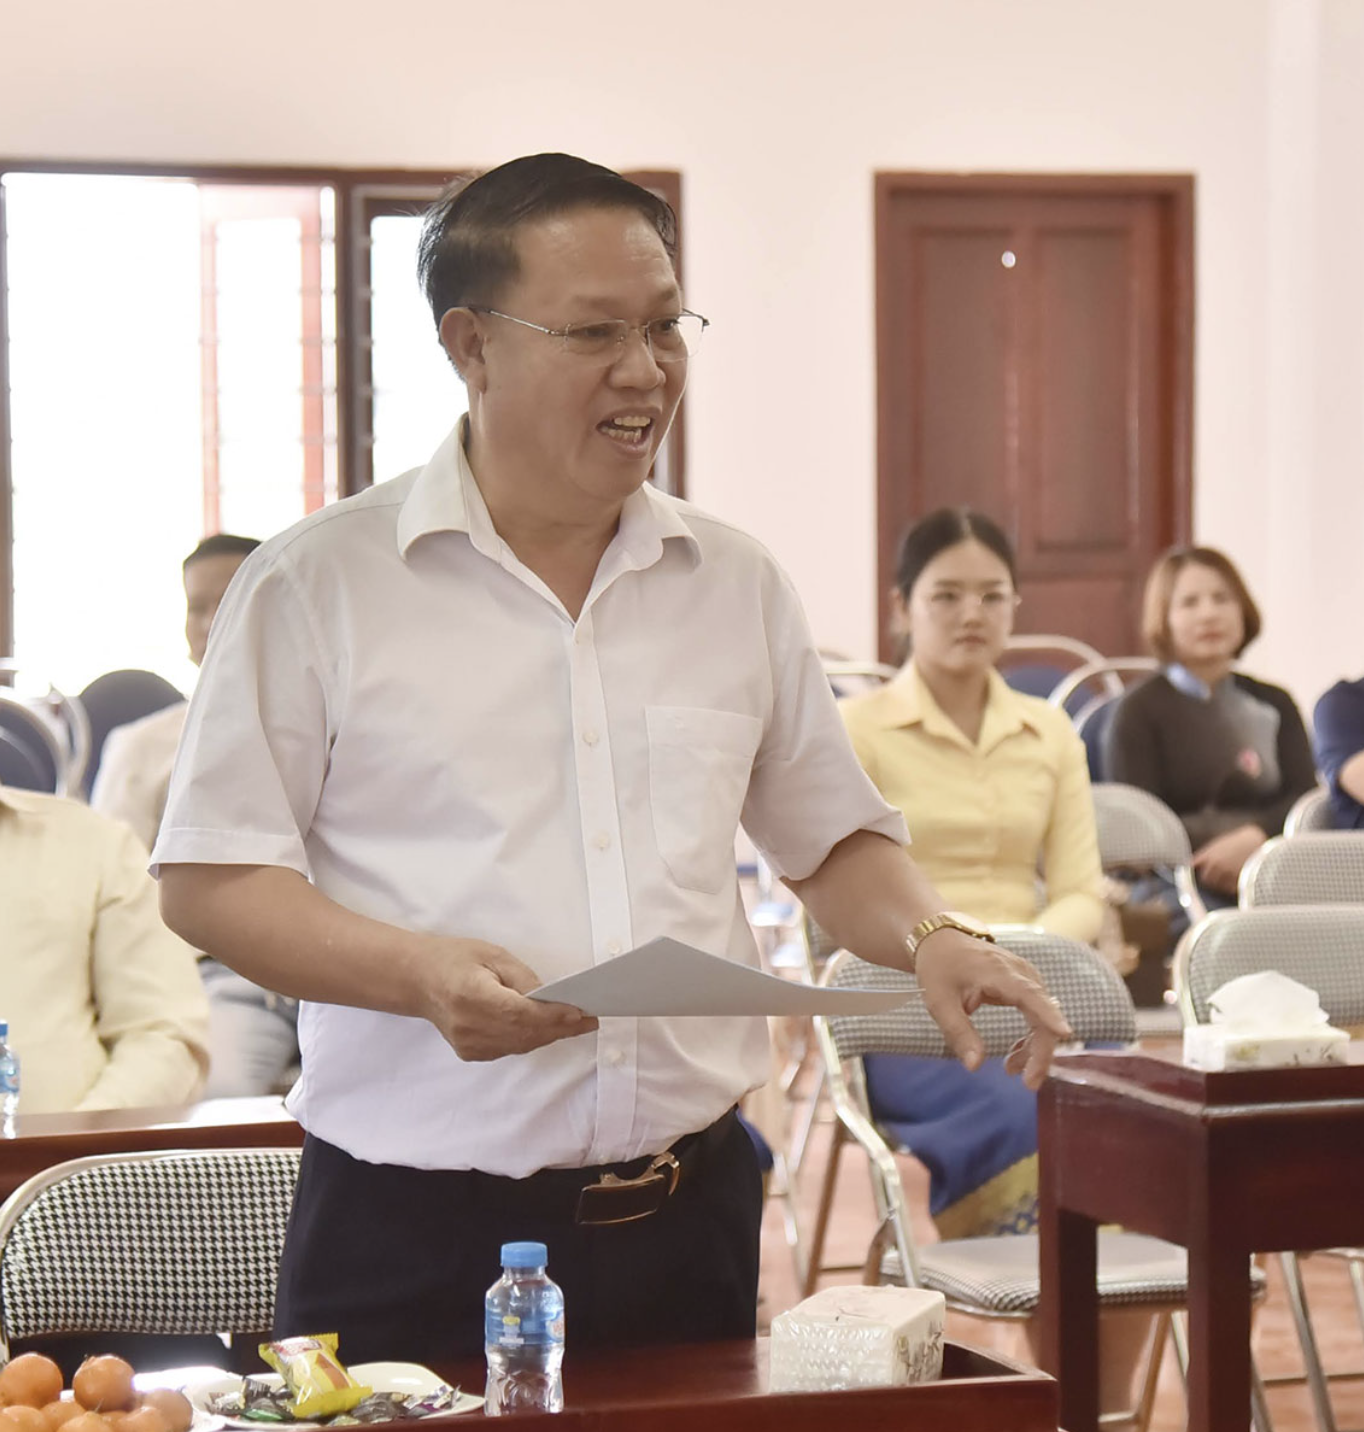 旅居老挝乌多姆塞（Oudomxay）越南人协会主席费文梅。